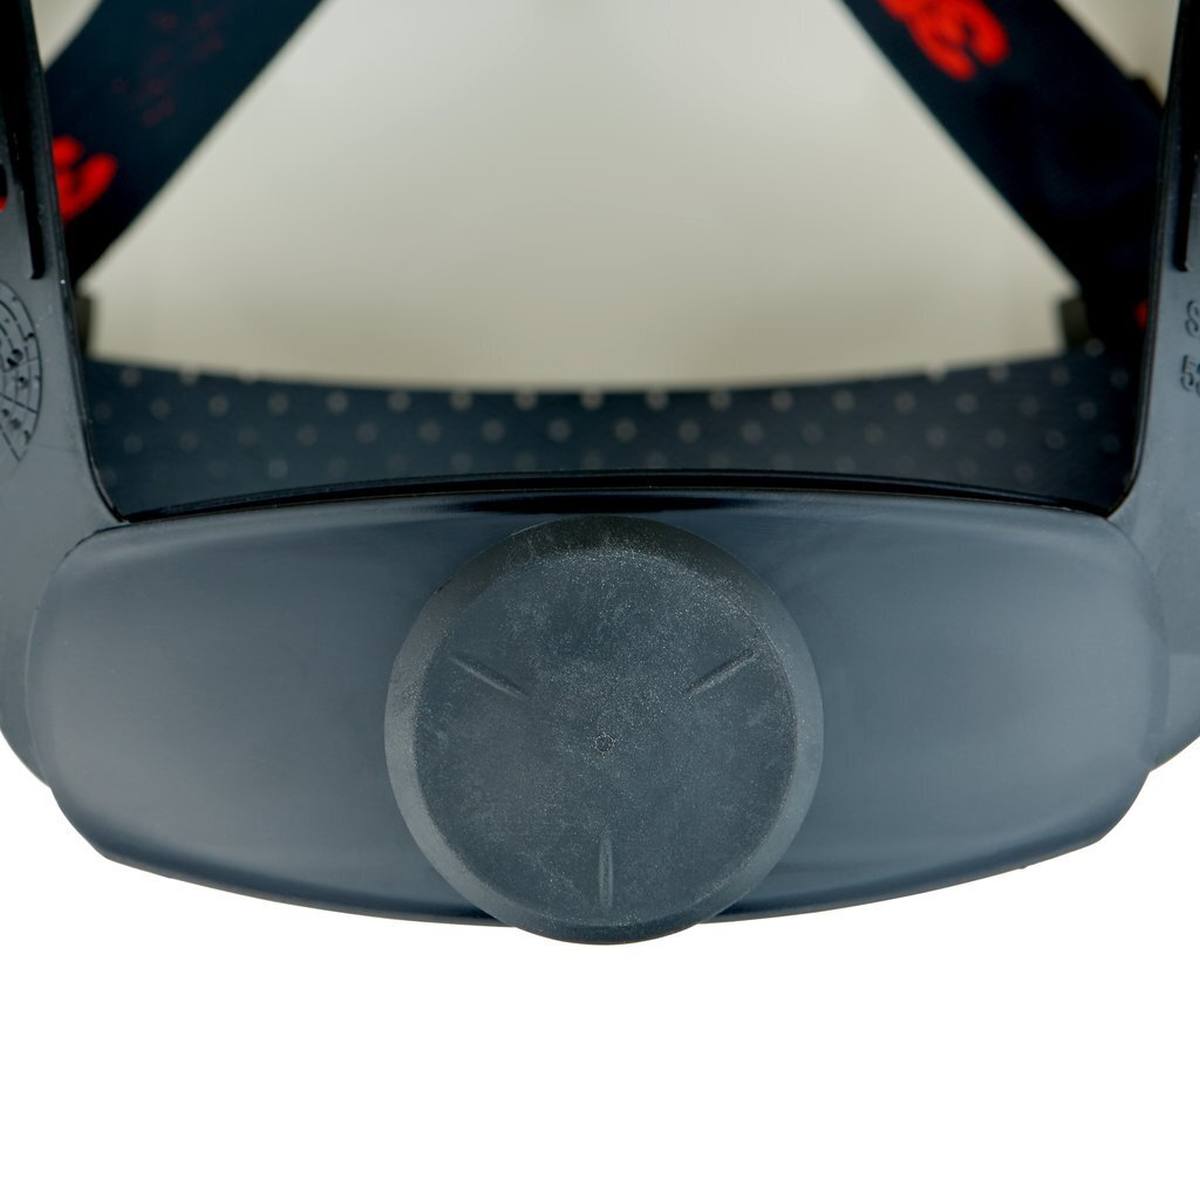 elmetto di sicurezza 3M G3000 con indicatore UV, bianco, ABS, chiusura a cricchetto ventilata, fascia antisudore in plastica, adesivo riflettente